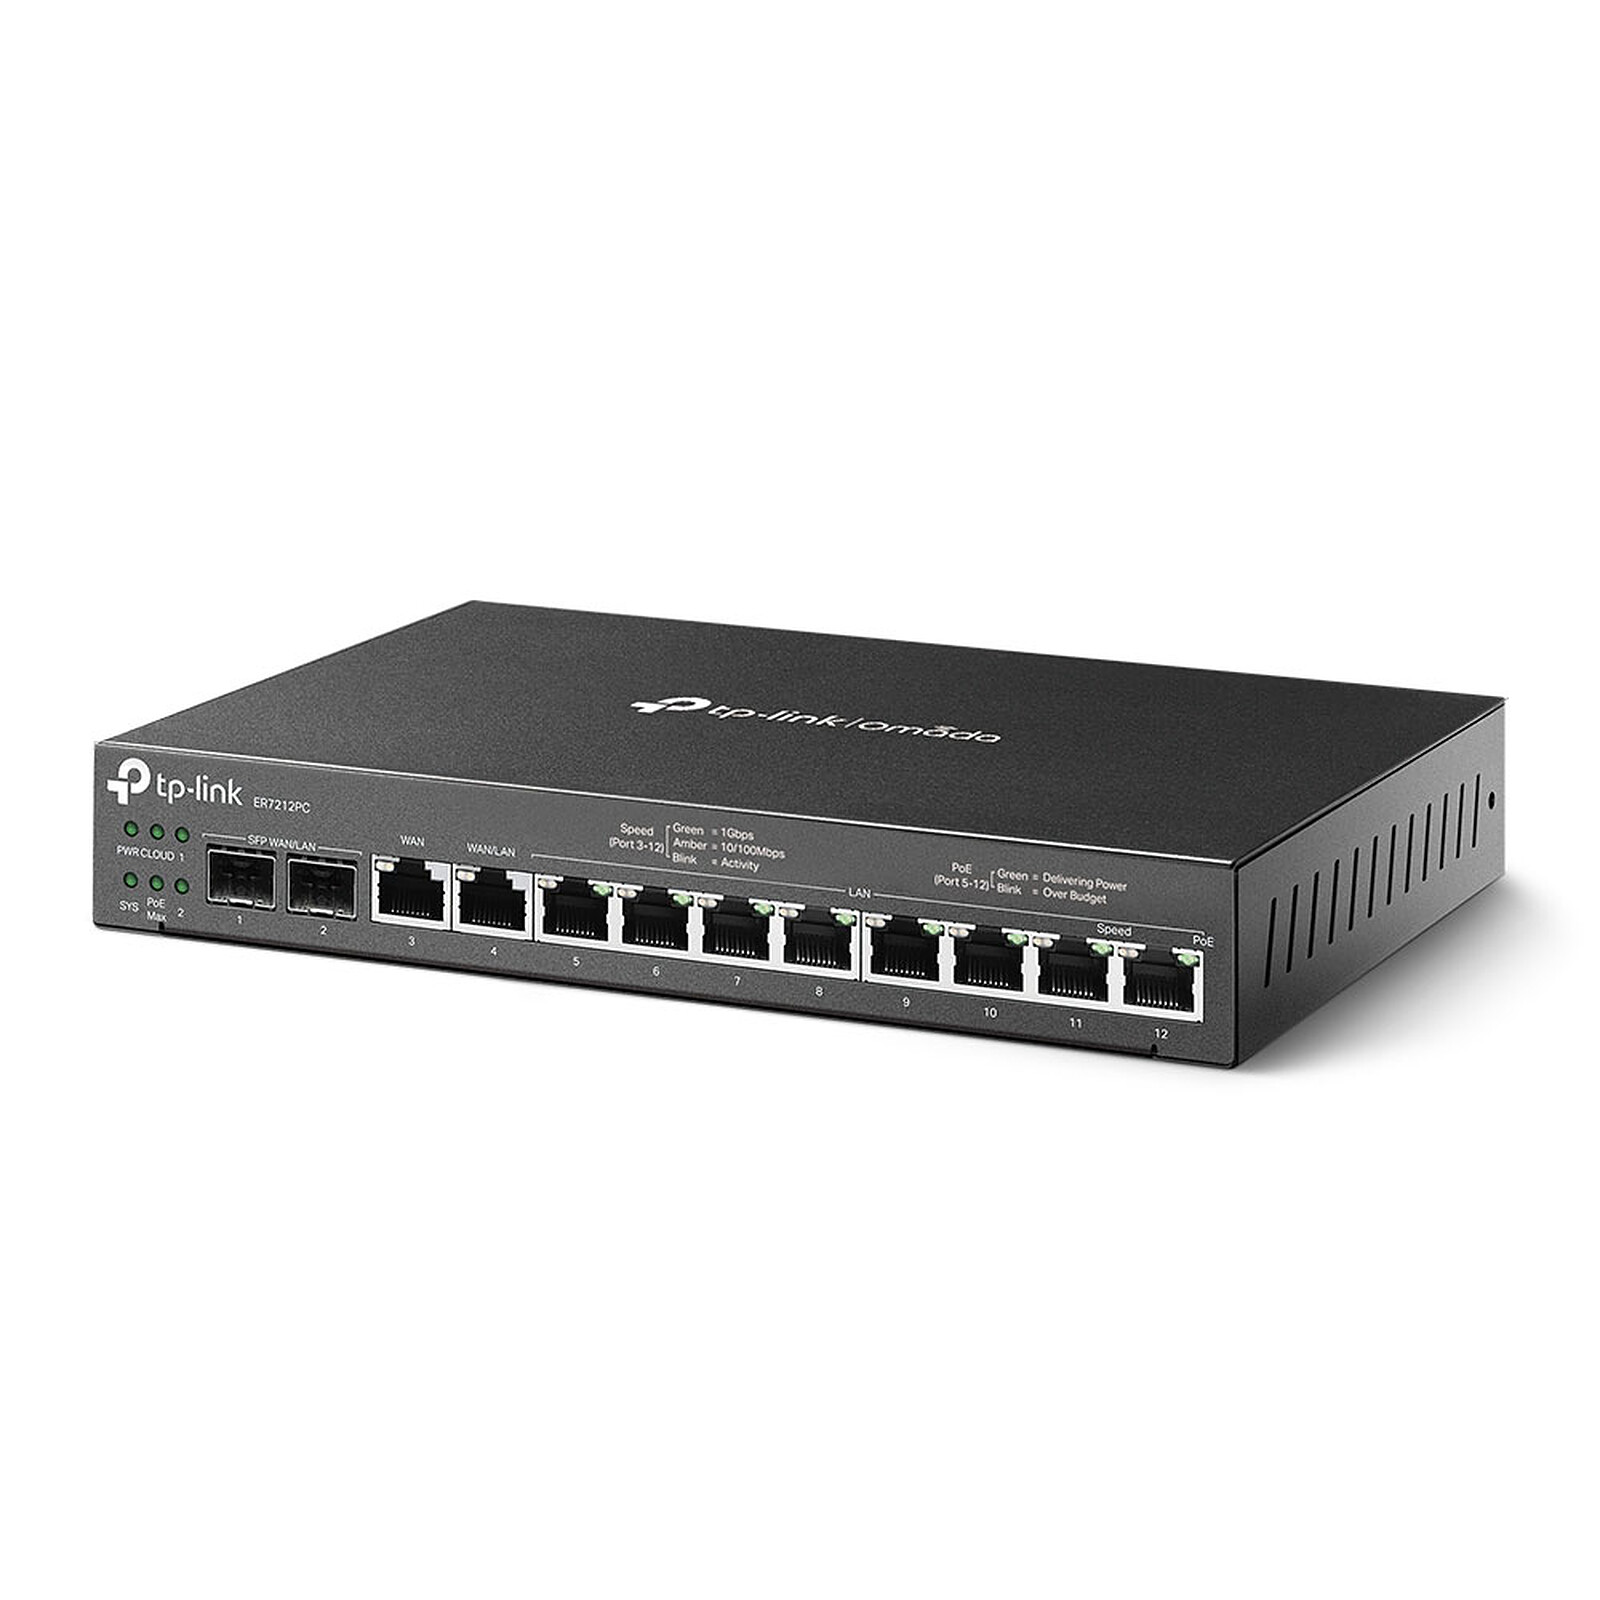 TP-LINK ER605 V2 - Modem & routeur - Garantie 3 ans LDLC